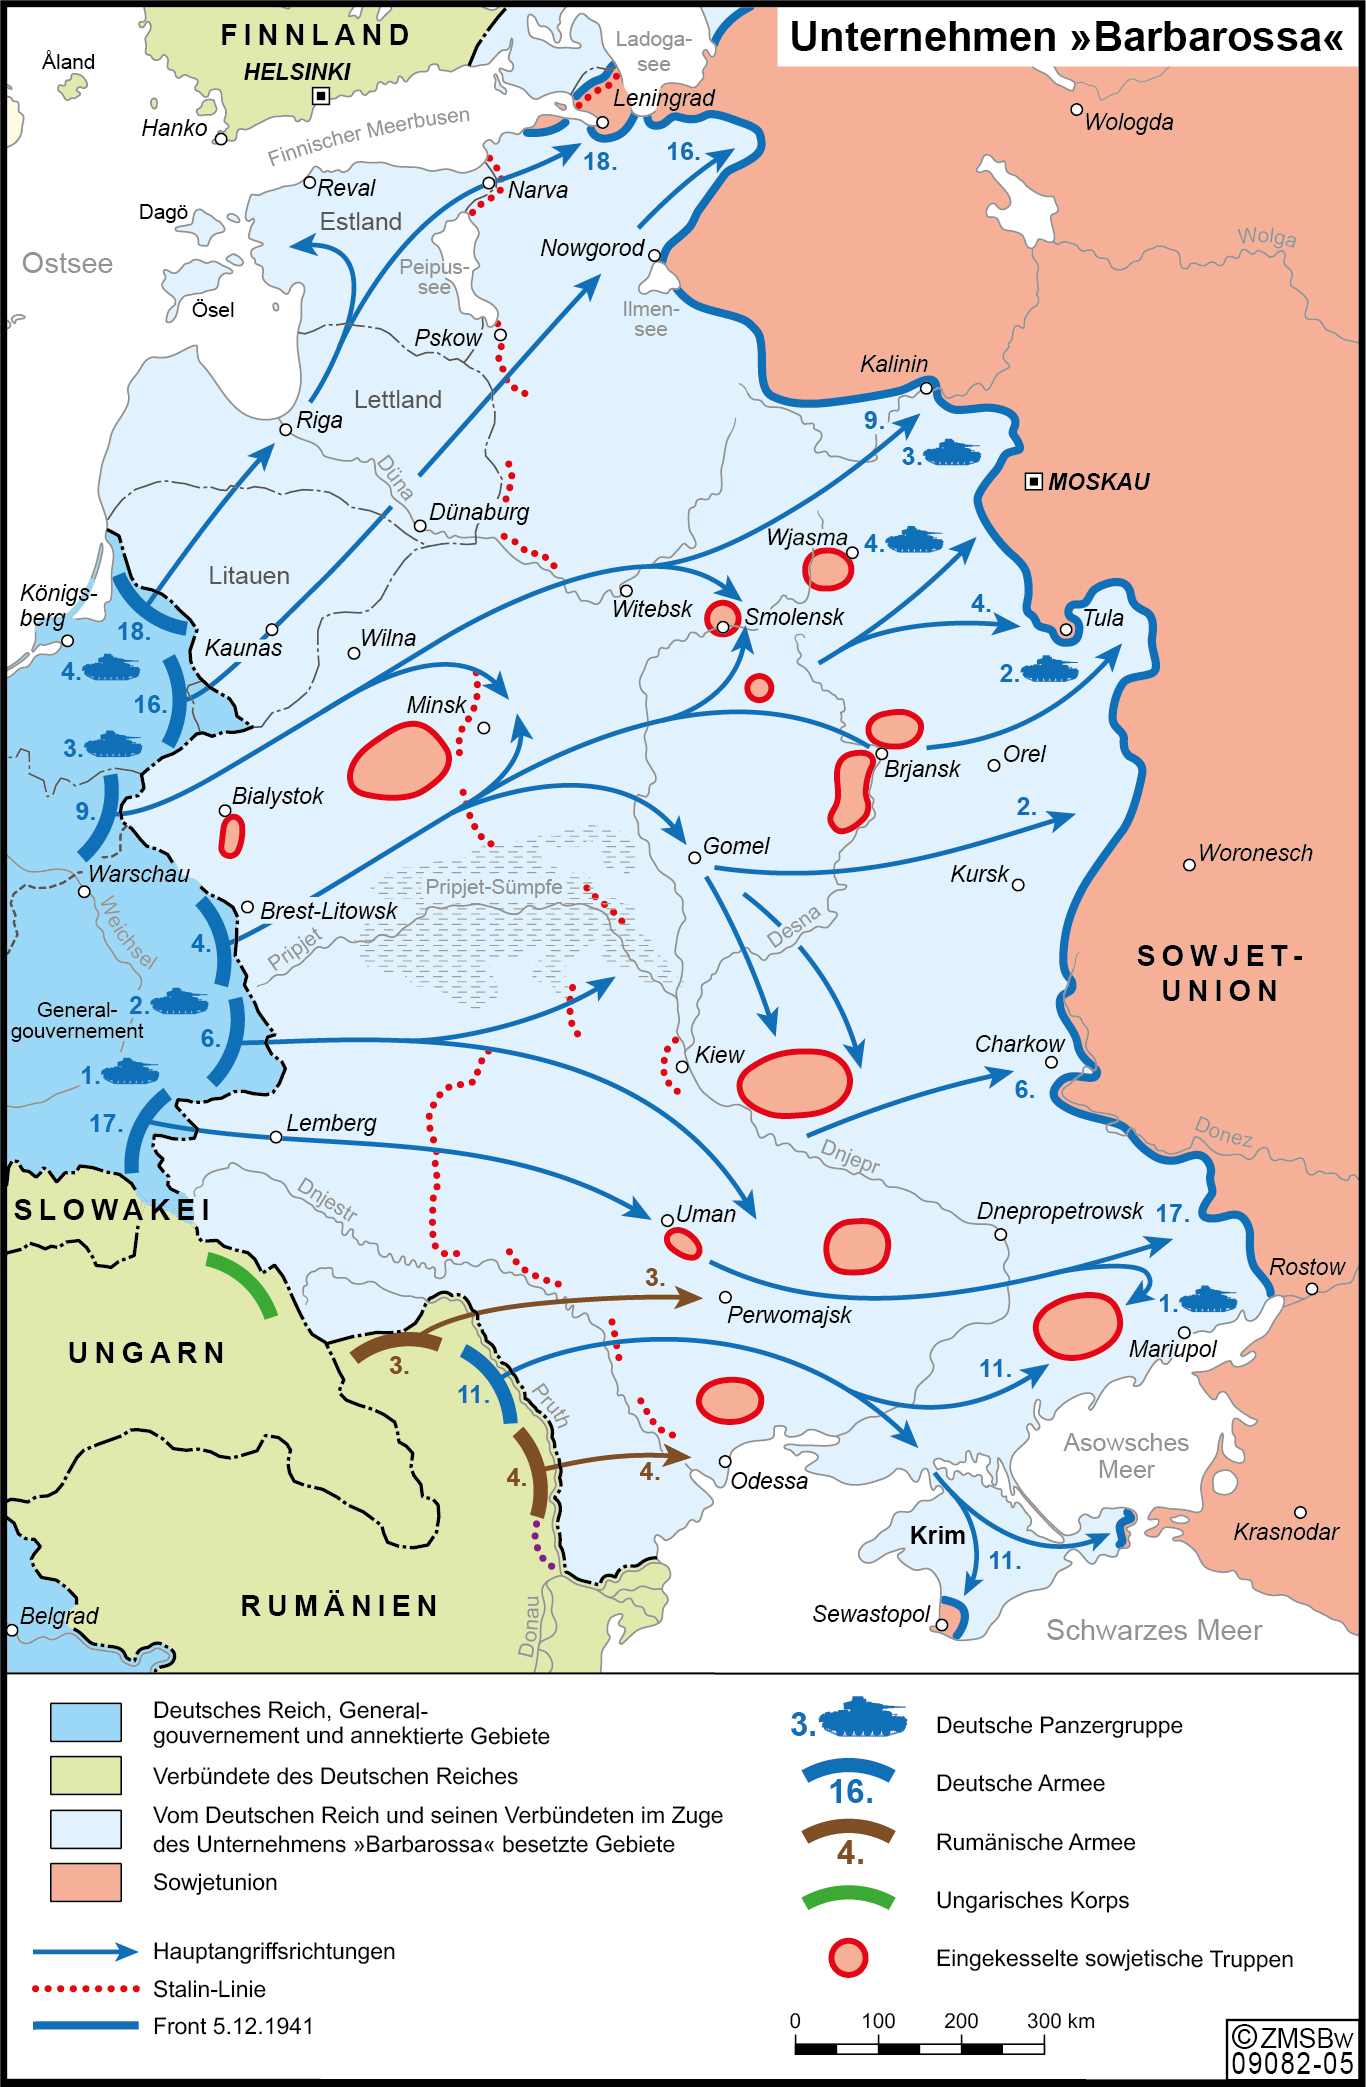 blaue Pfeile zeigen die Angriffe der Deutschen Wehrmacht auf die Sowjetunion